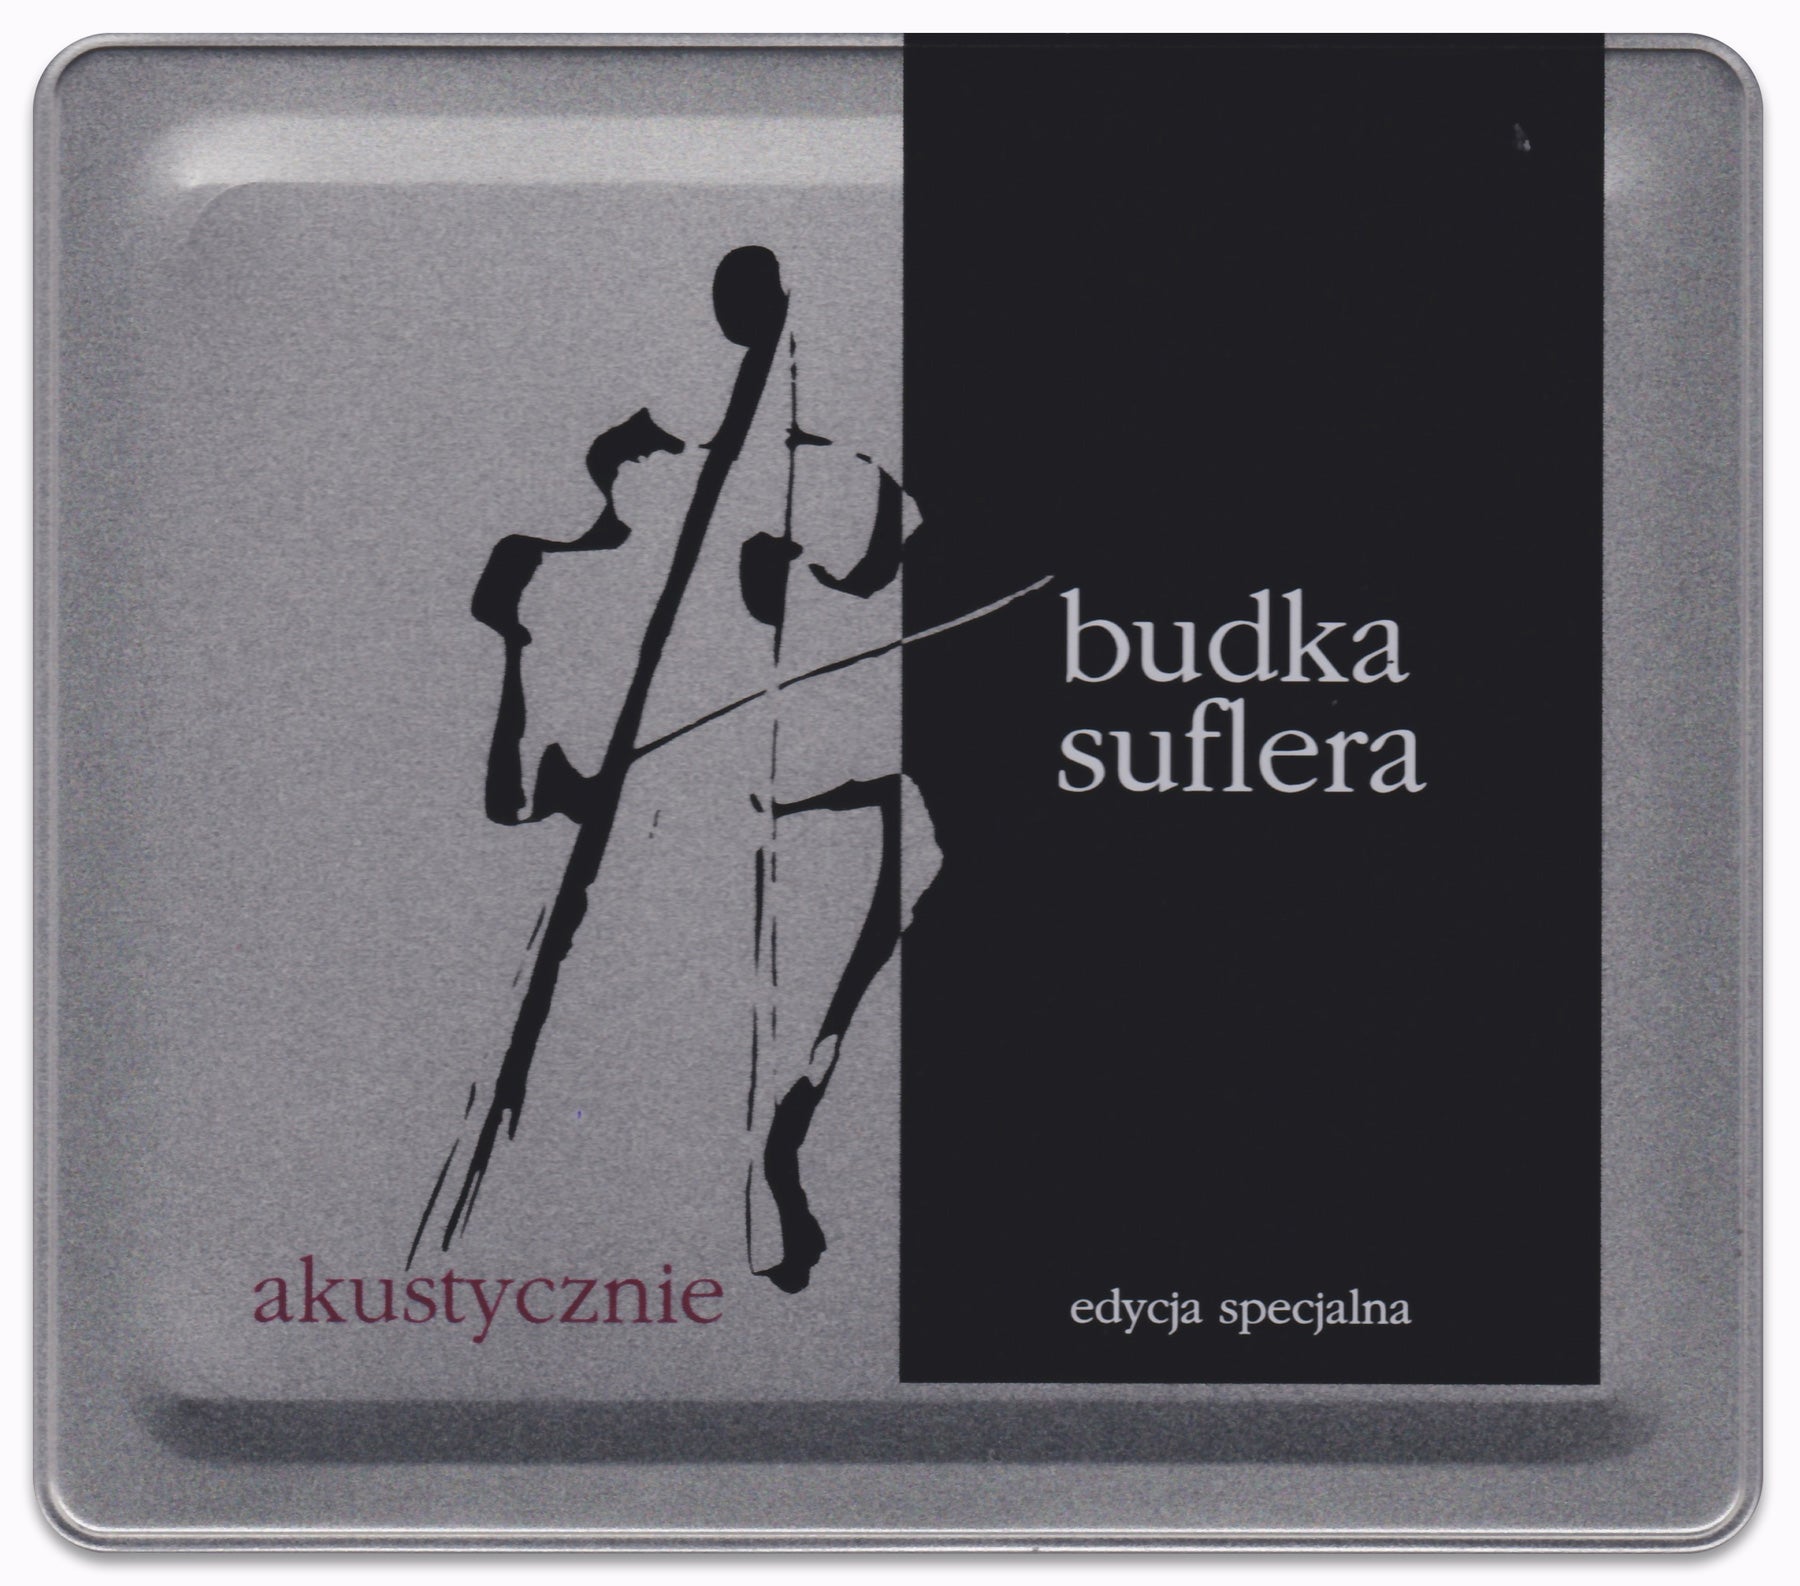 Budka Suflera - Akustycznie -  Edycja specjalna (Special Edition) CD